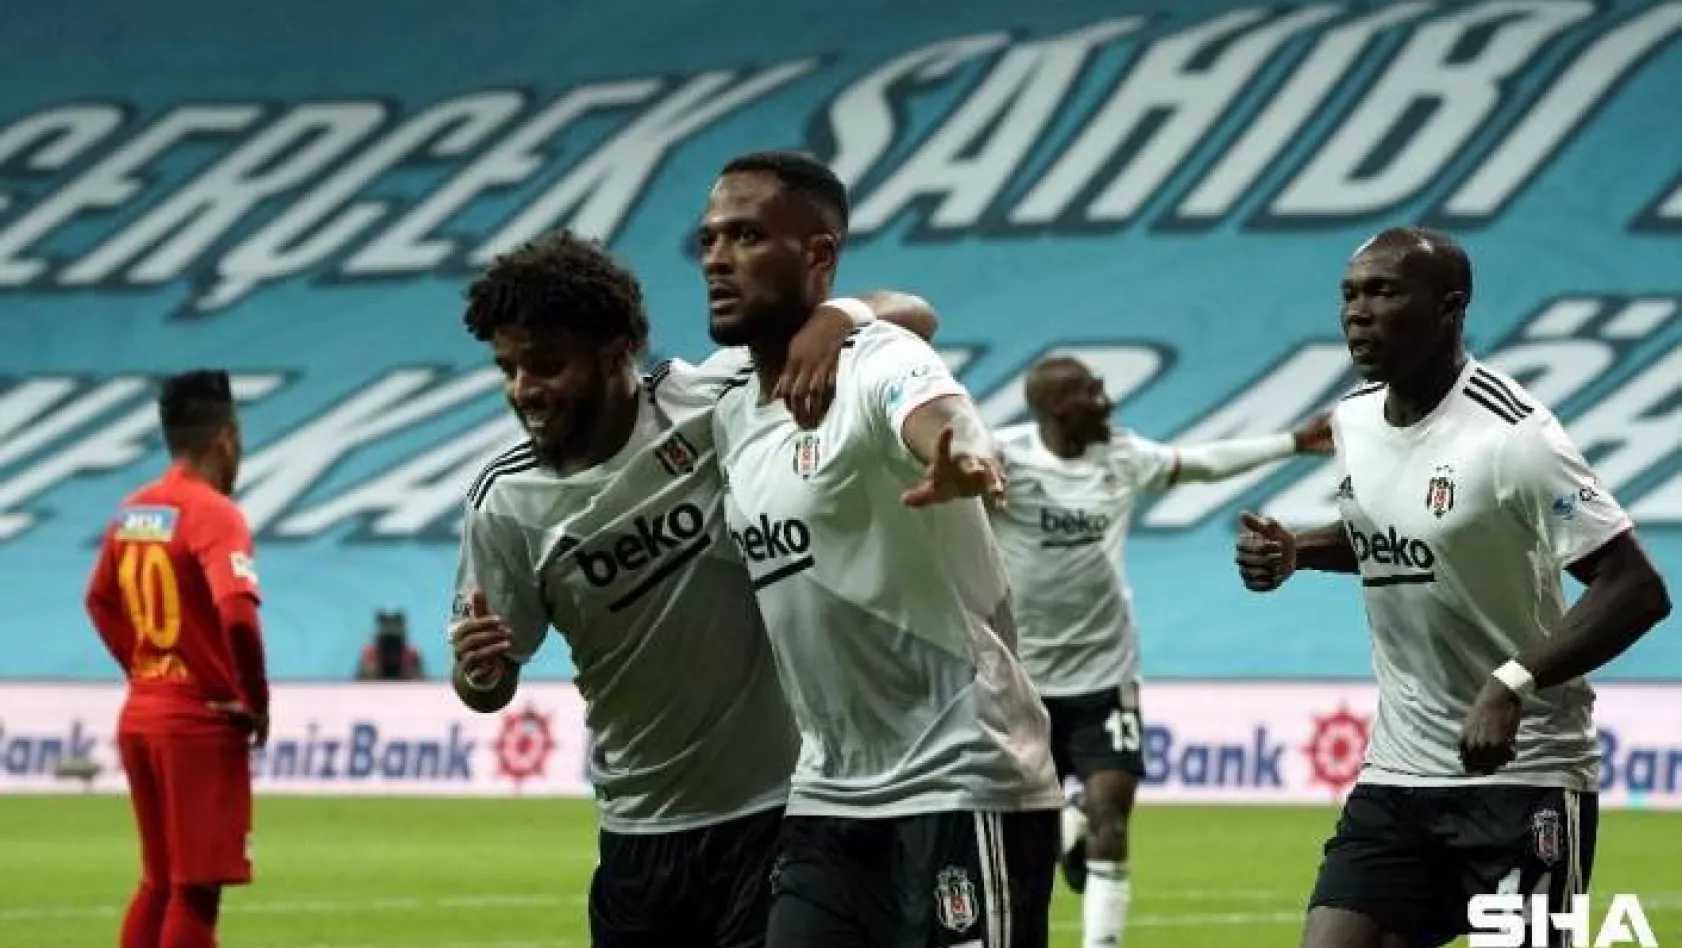 Süper Lig: Beşiktaş: 1 - Yeni Malatyaspor: 0 (Maç sonucu)